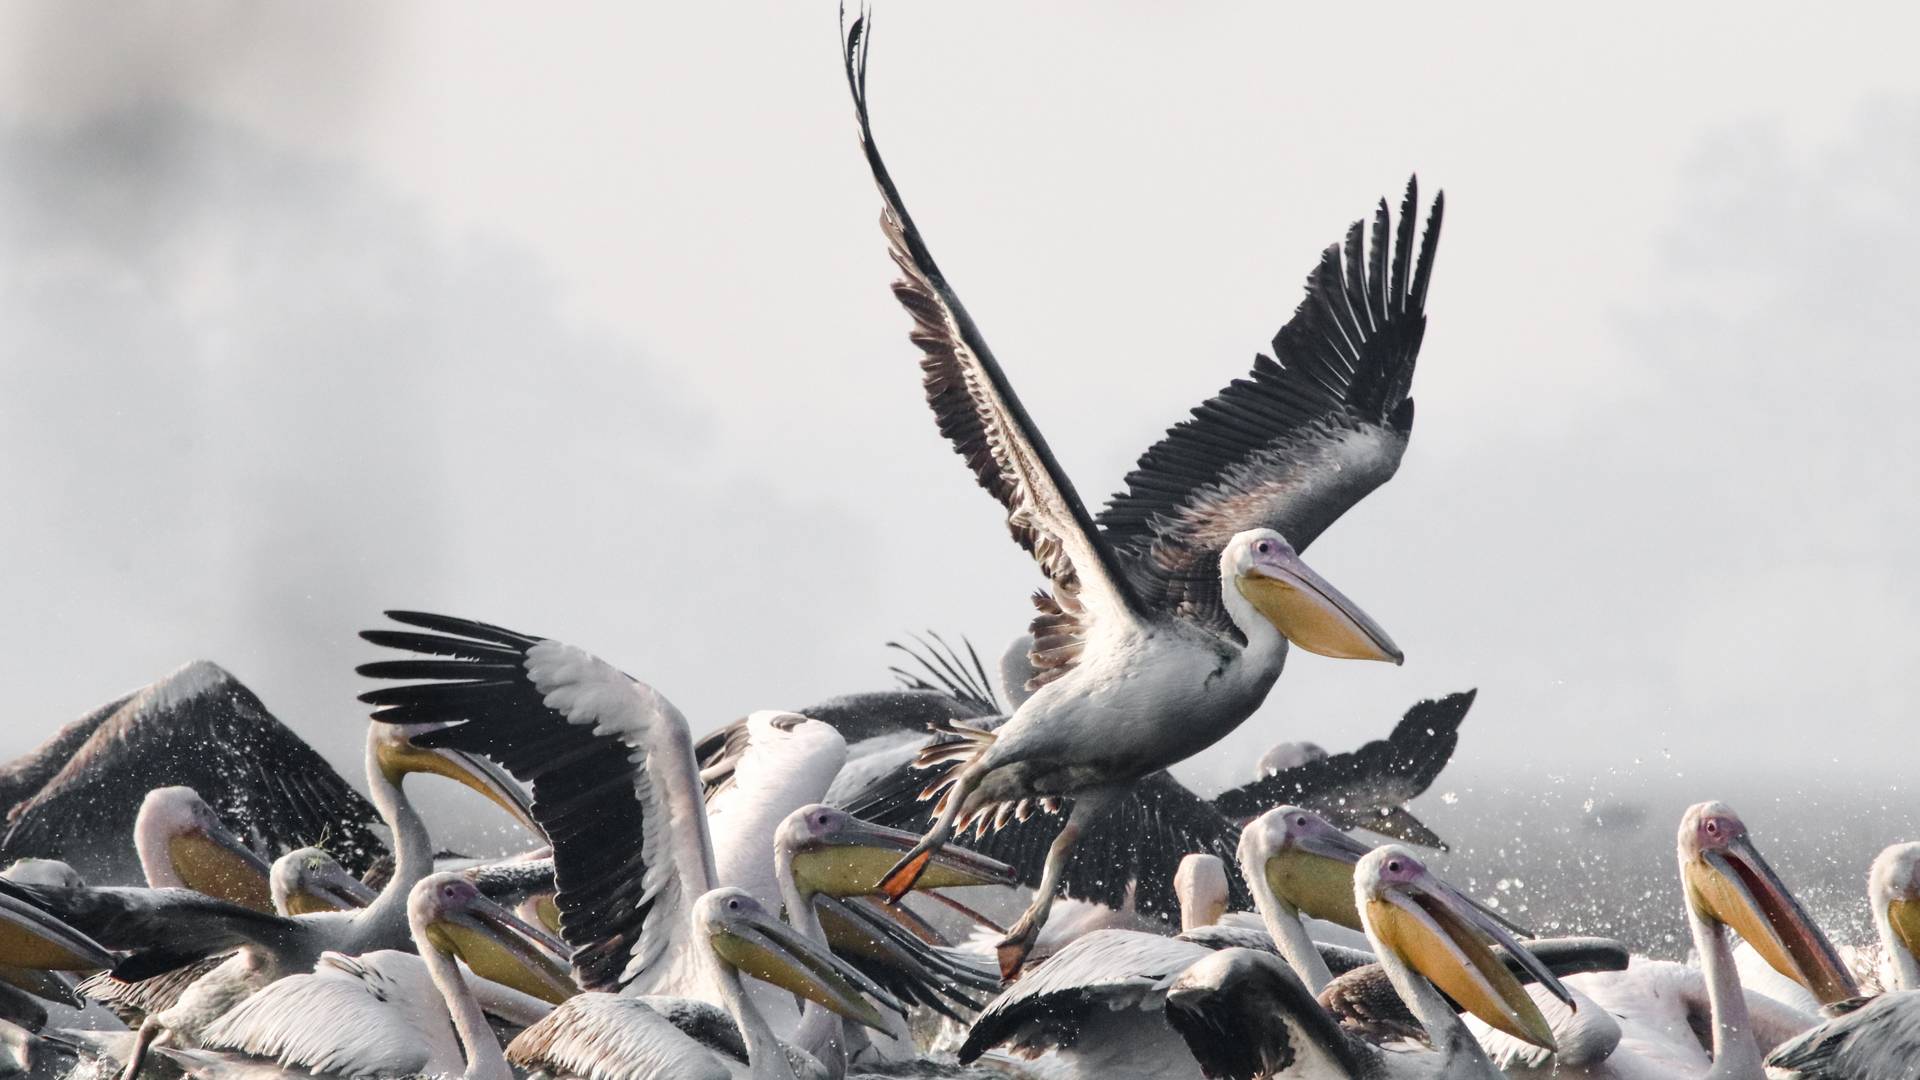 Pojavili su se pelikani na Dunavu posle 100 godina i to je najlepša vest dana